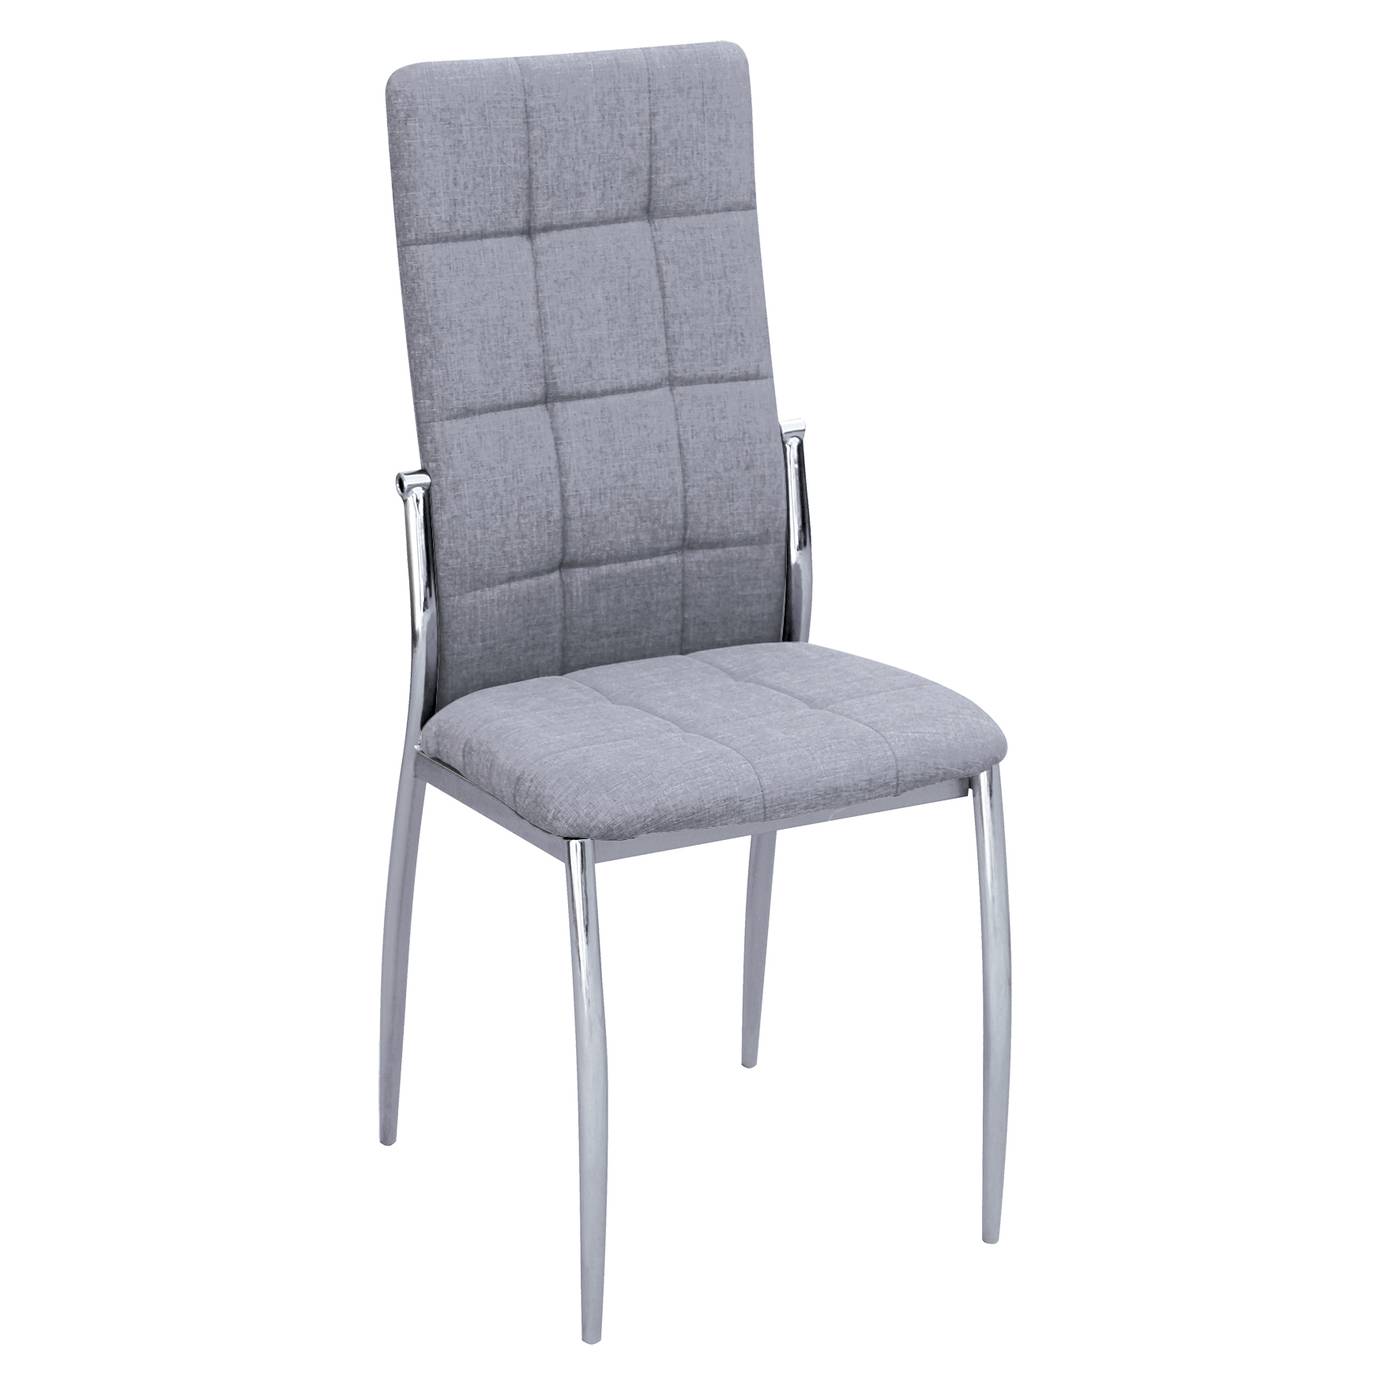 Silla de comedor moderna. Patas metálicas cromadas. Respaldo y asiento tapizado en tela color gris.